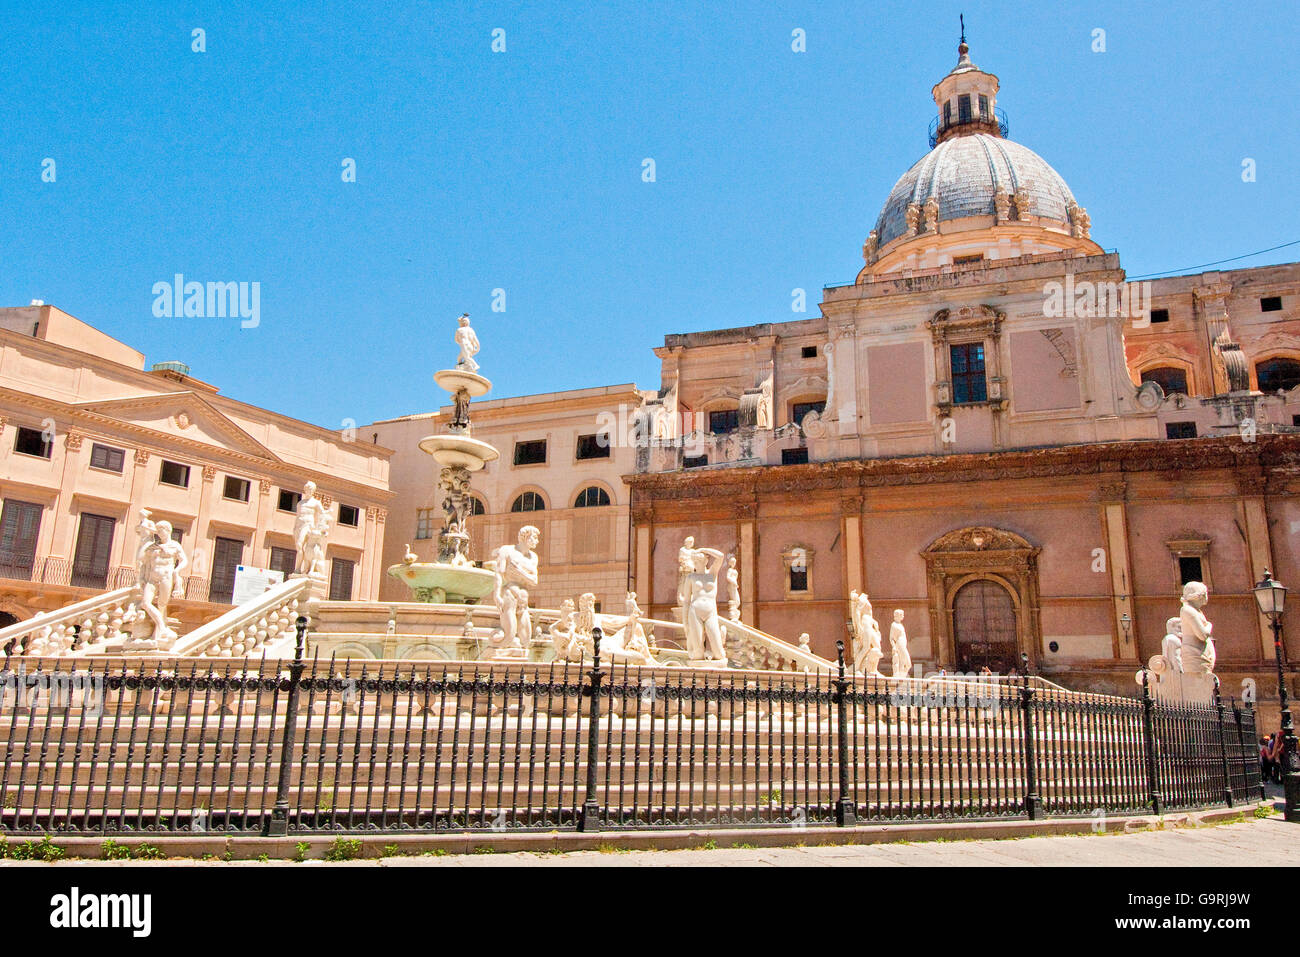 Curch Santa Caterina and Piazza Pretoria Piazza della vergogna, Palermo, Sicily, Italy, Europe / Palermo Stock Photo